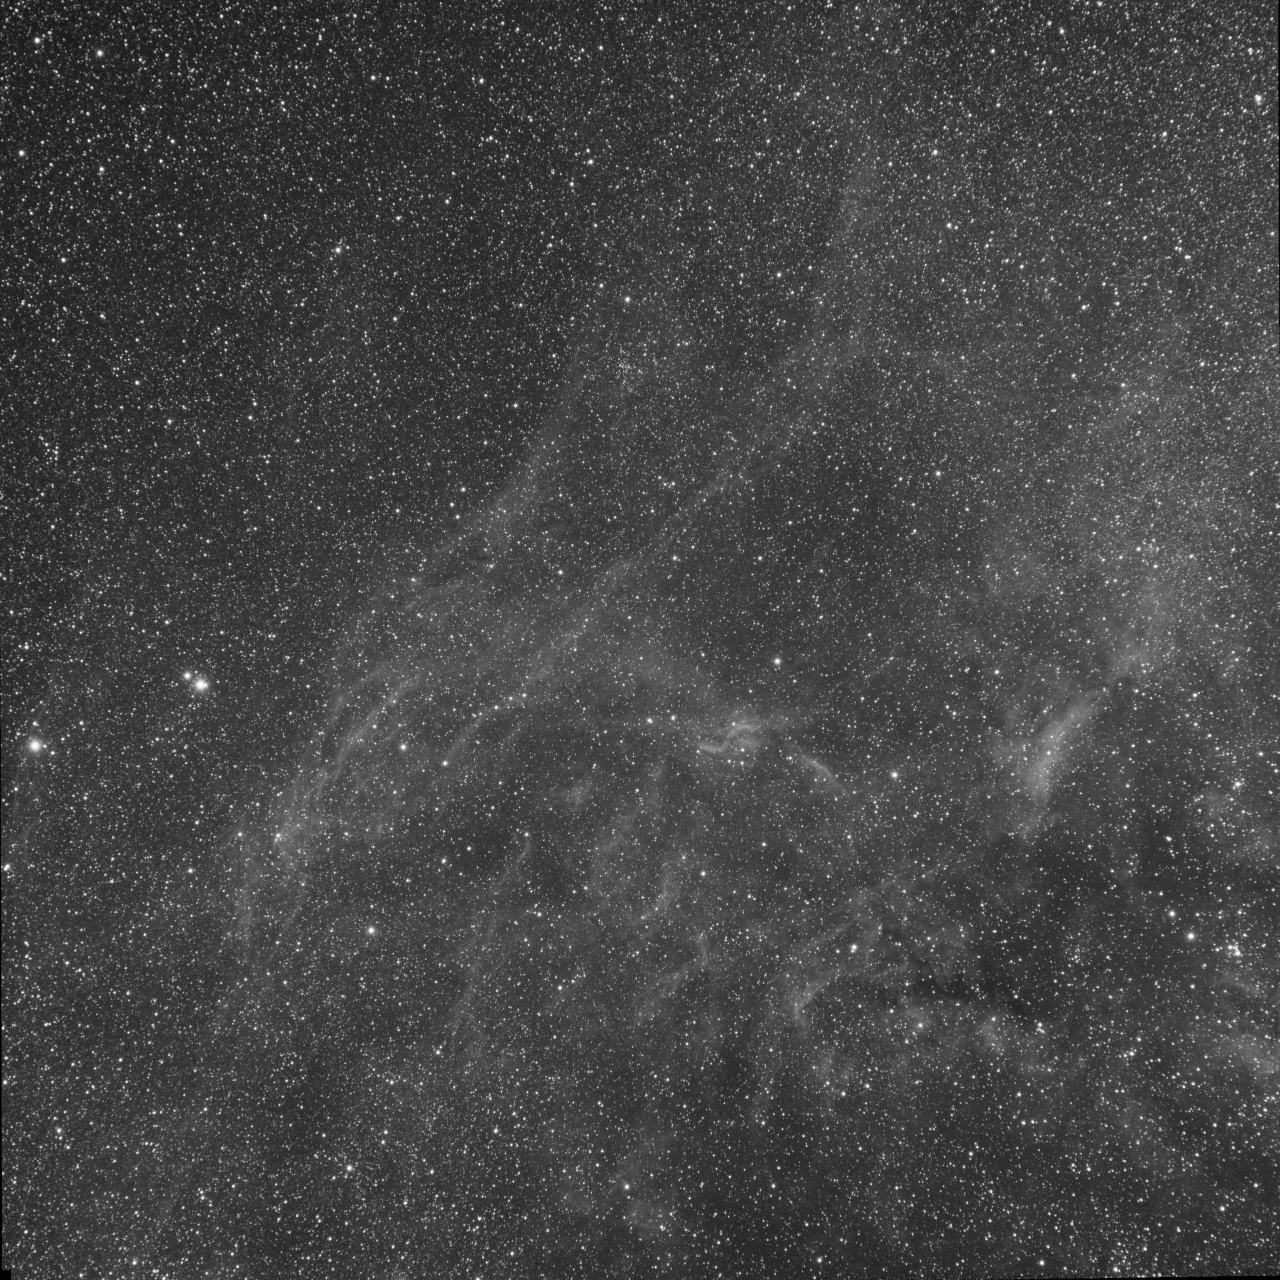 Cygnus near DWB111 - Sii